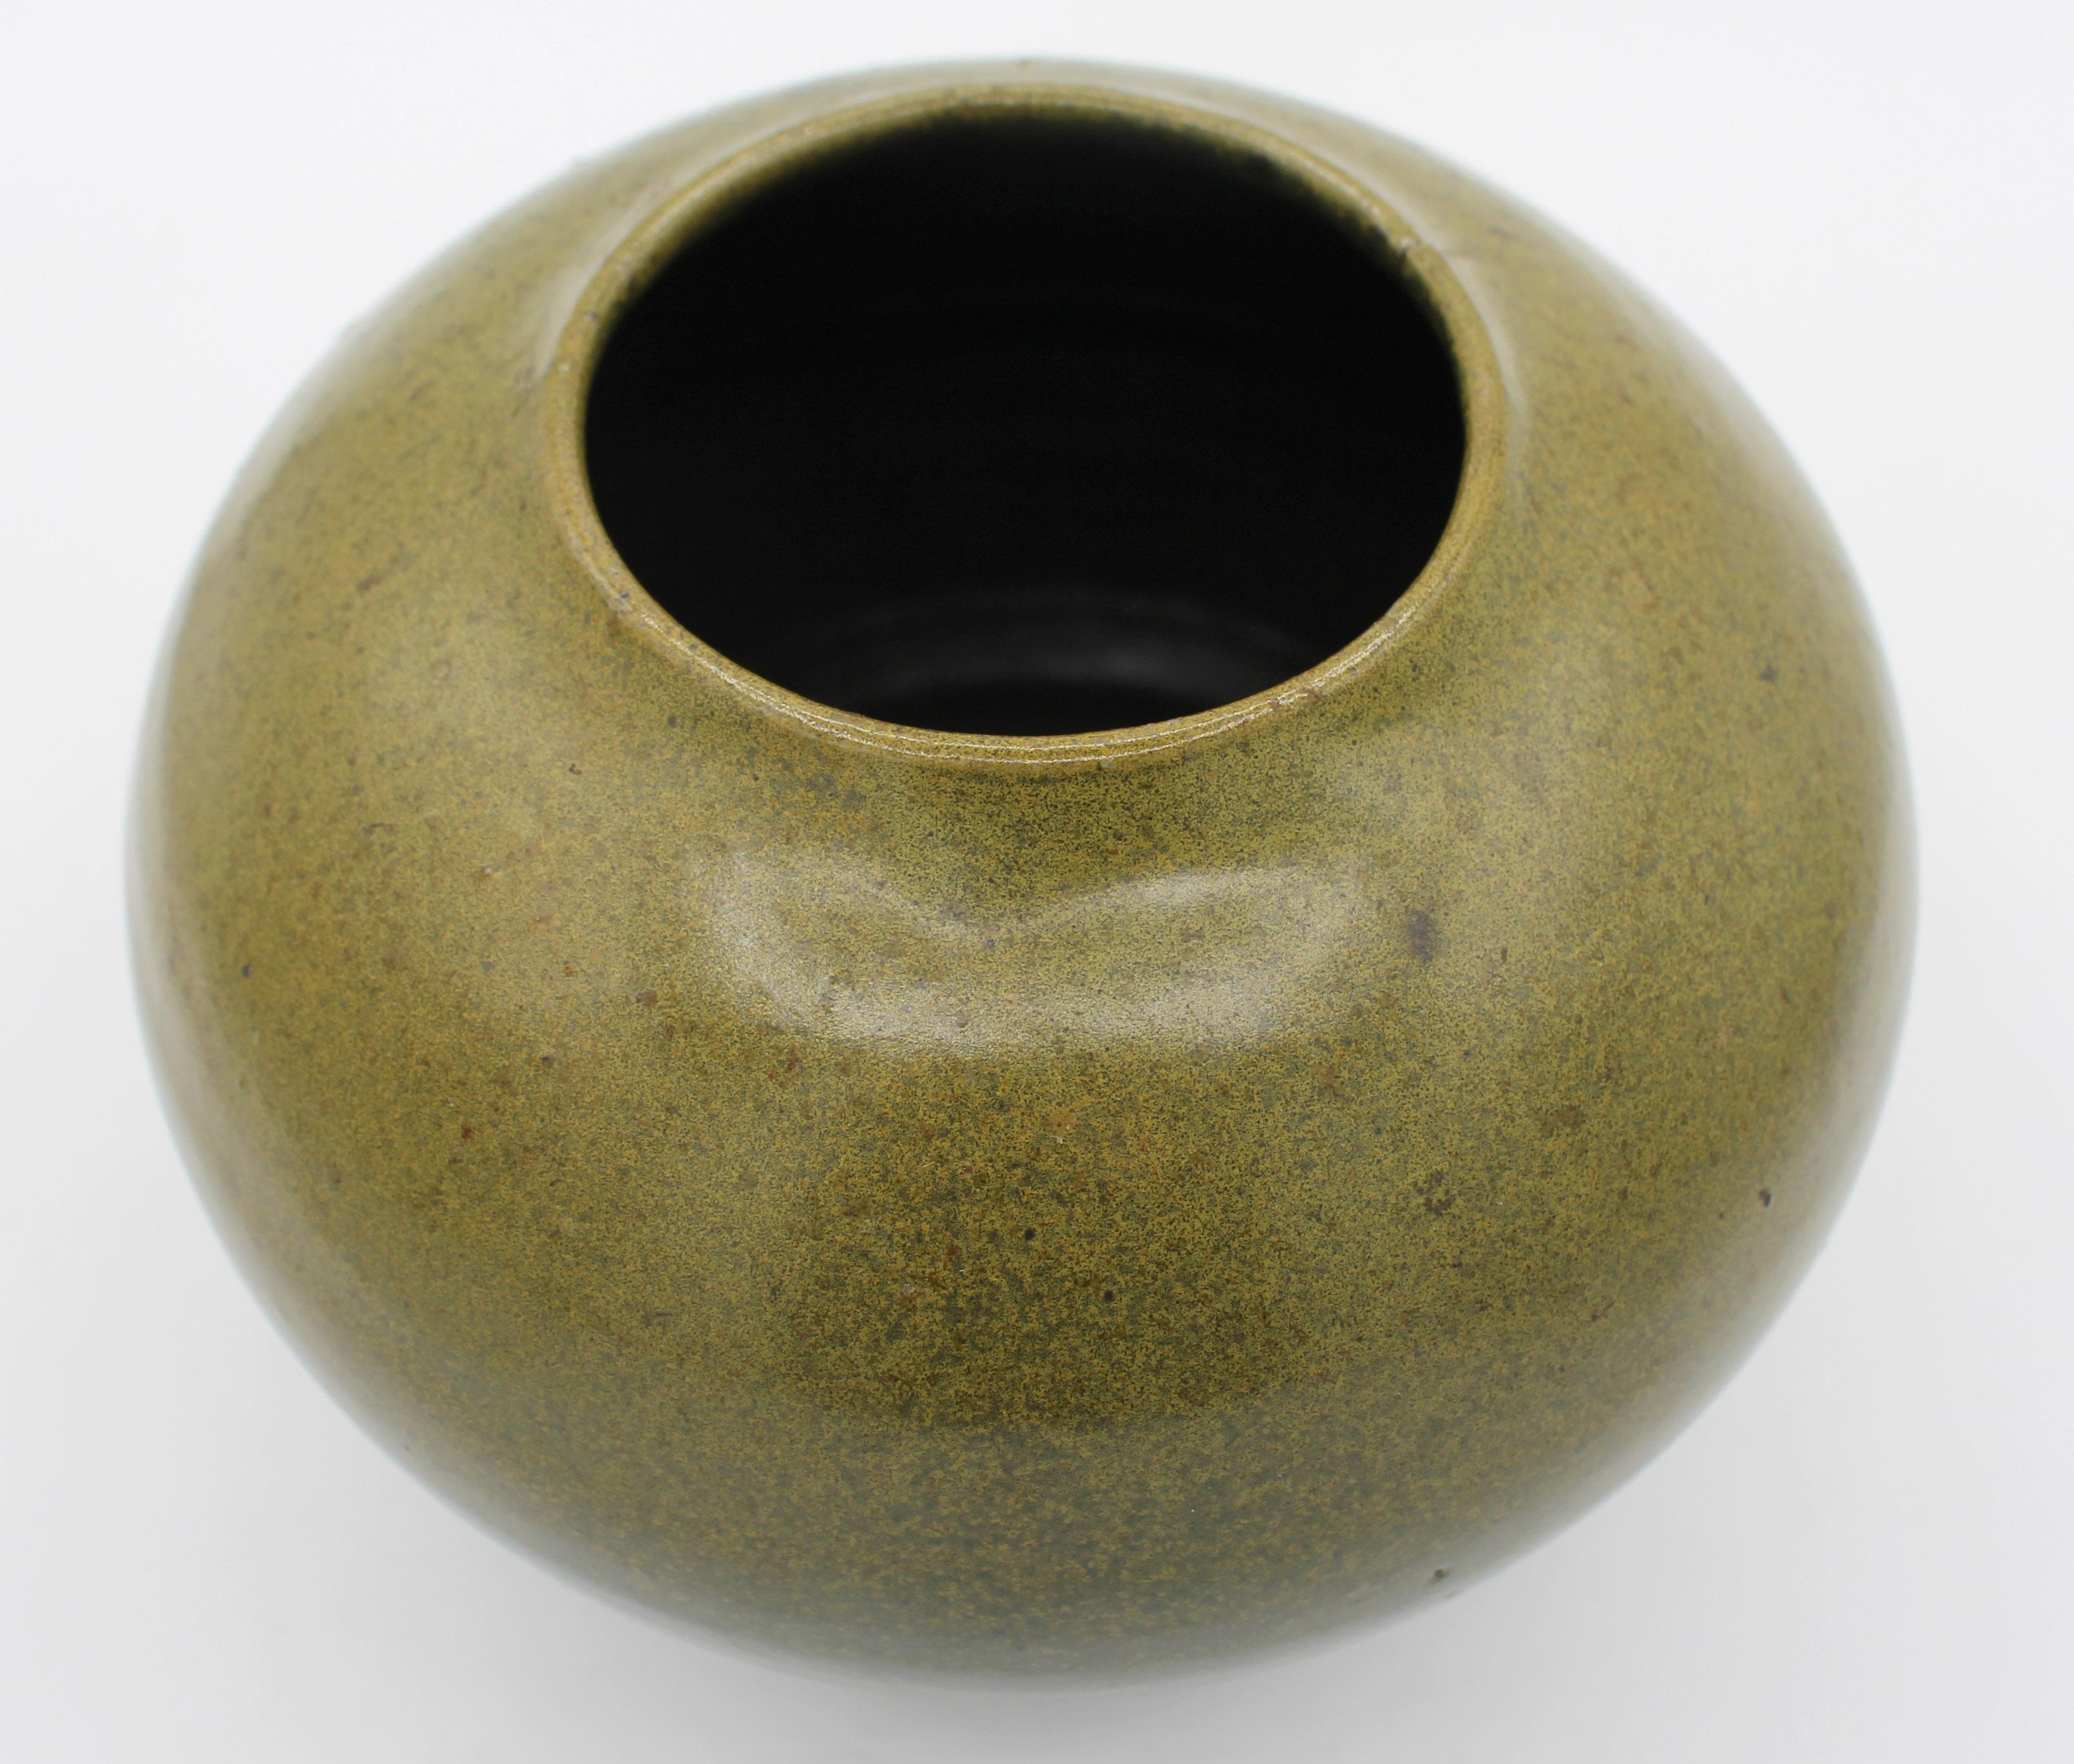 Vase en poterie Jugtown Ware du milieu du 20e siècle. Peau de grenouille émaillée ; design d'influence asiatique. Estampillé 